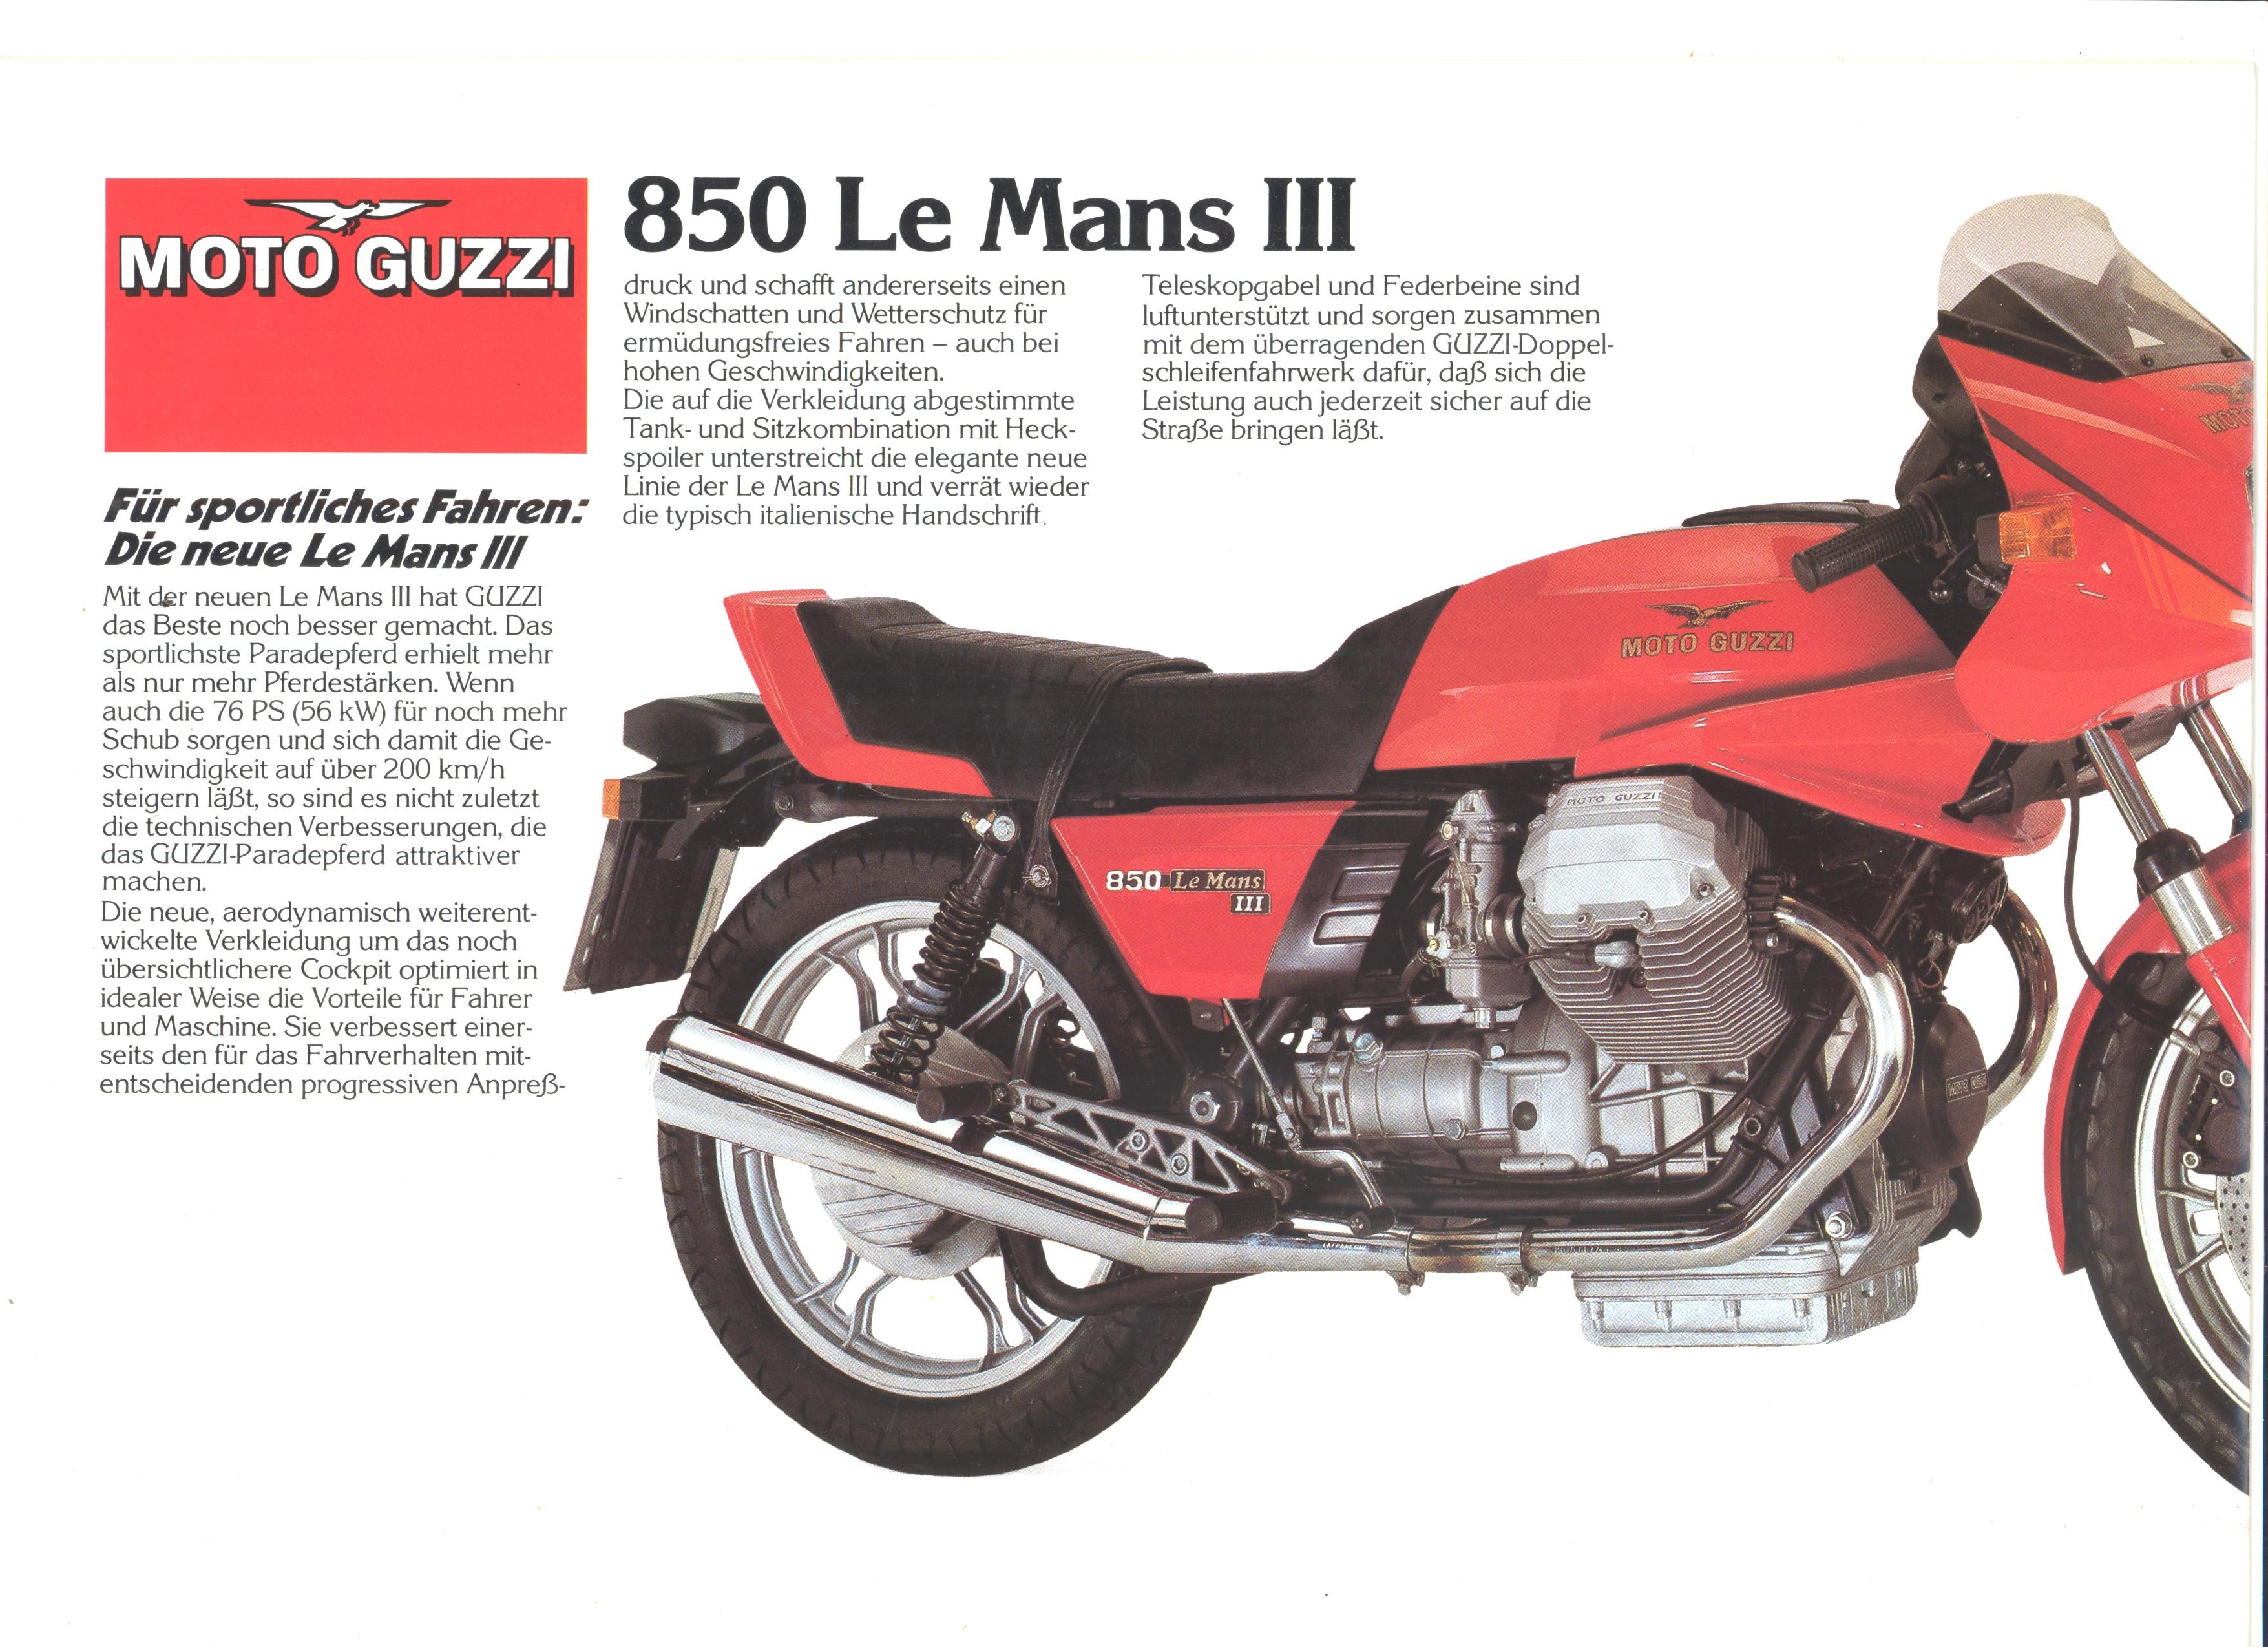 Brochure Moto Guzzi 850 Le Mans Iii More Moto Guzzi Topics Moto Guzzi Topics Gregory Bender